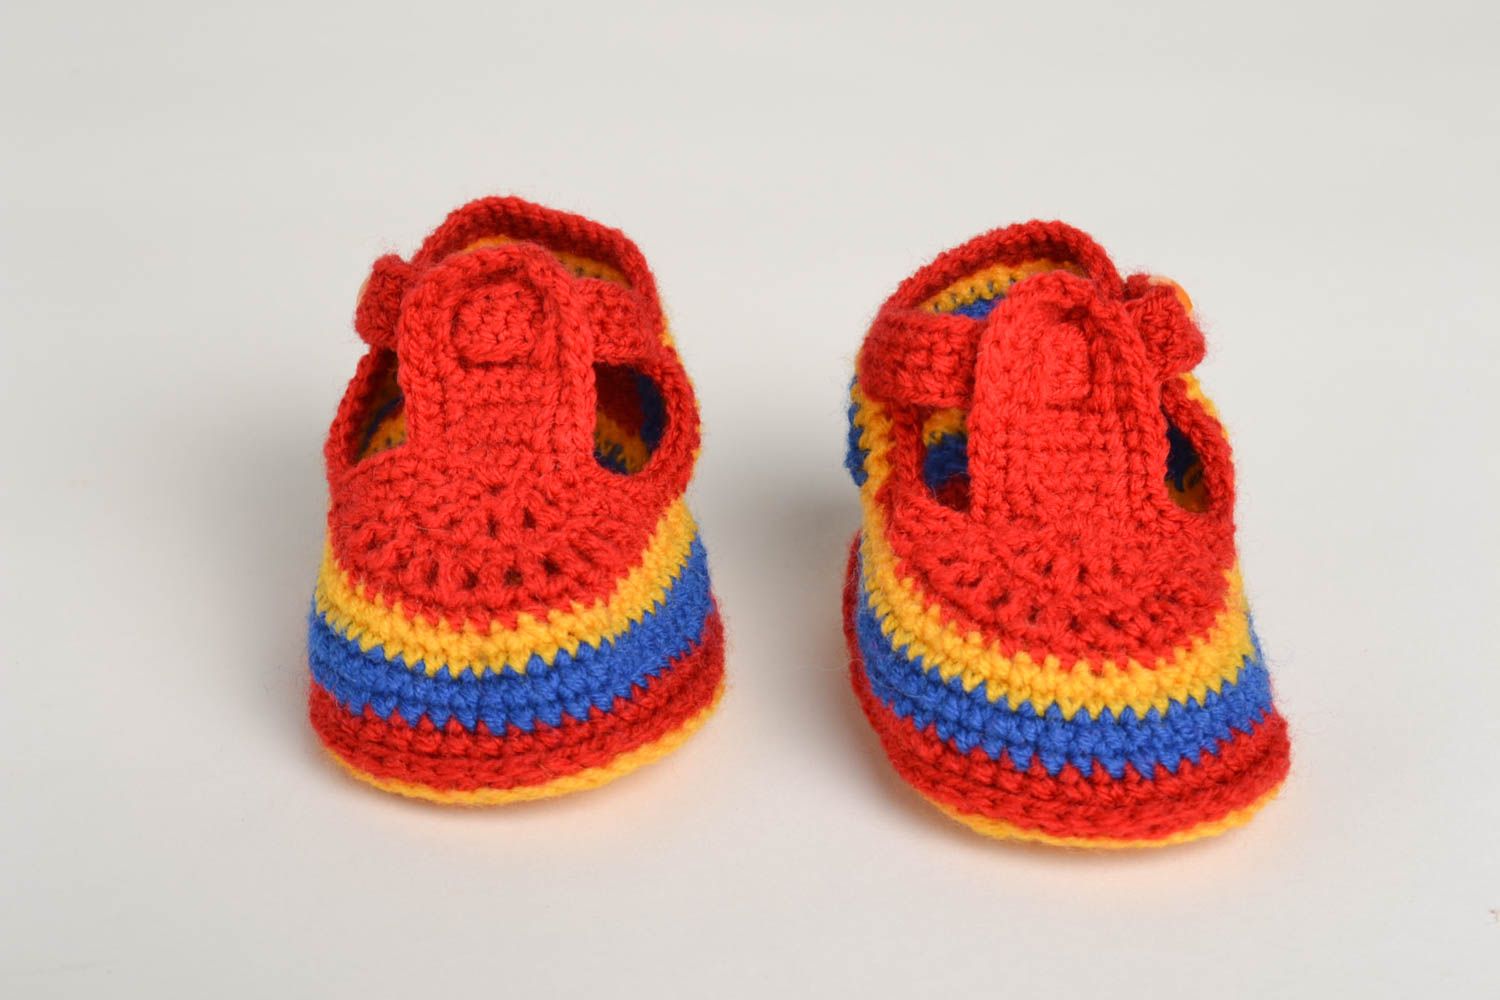 Unusual handmade crochet baby booties warm baby booties baby accessories photo 2